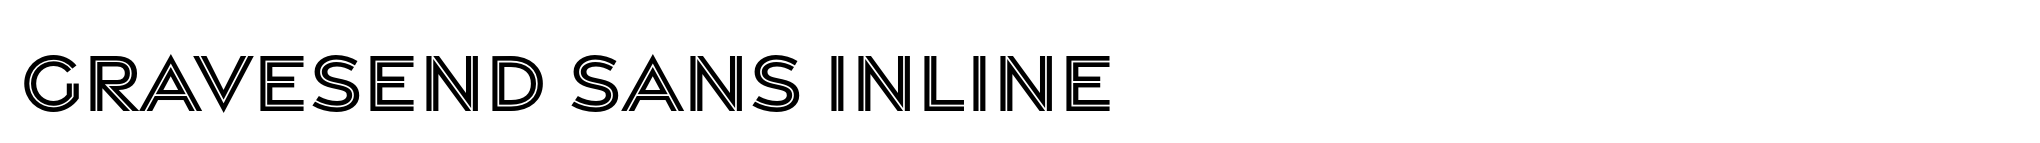 Gravesend Sans Inline image